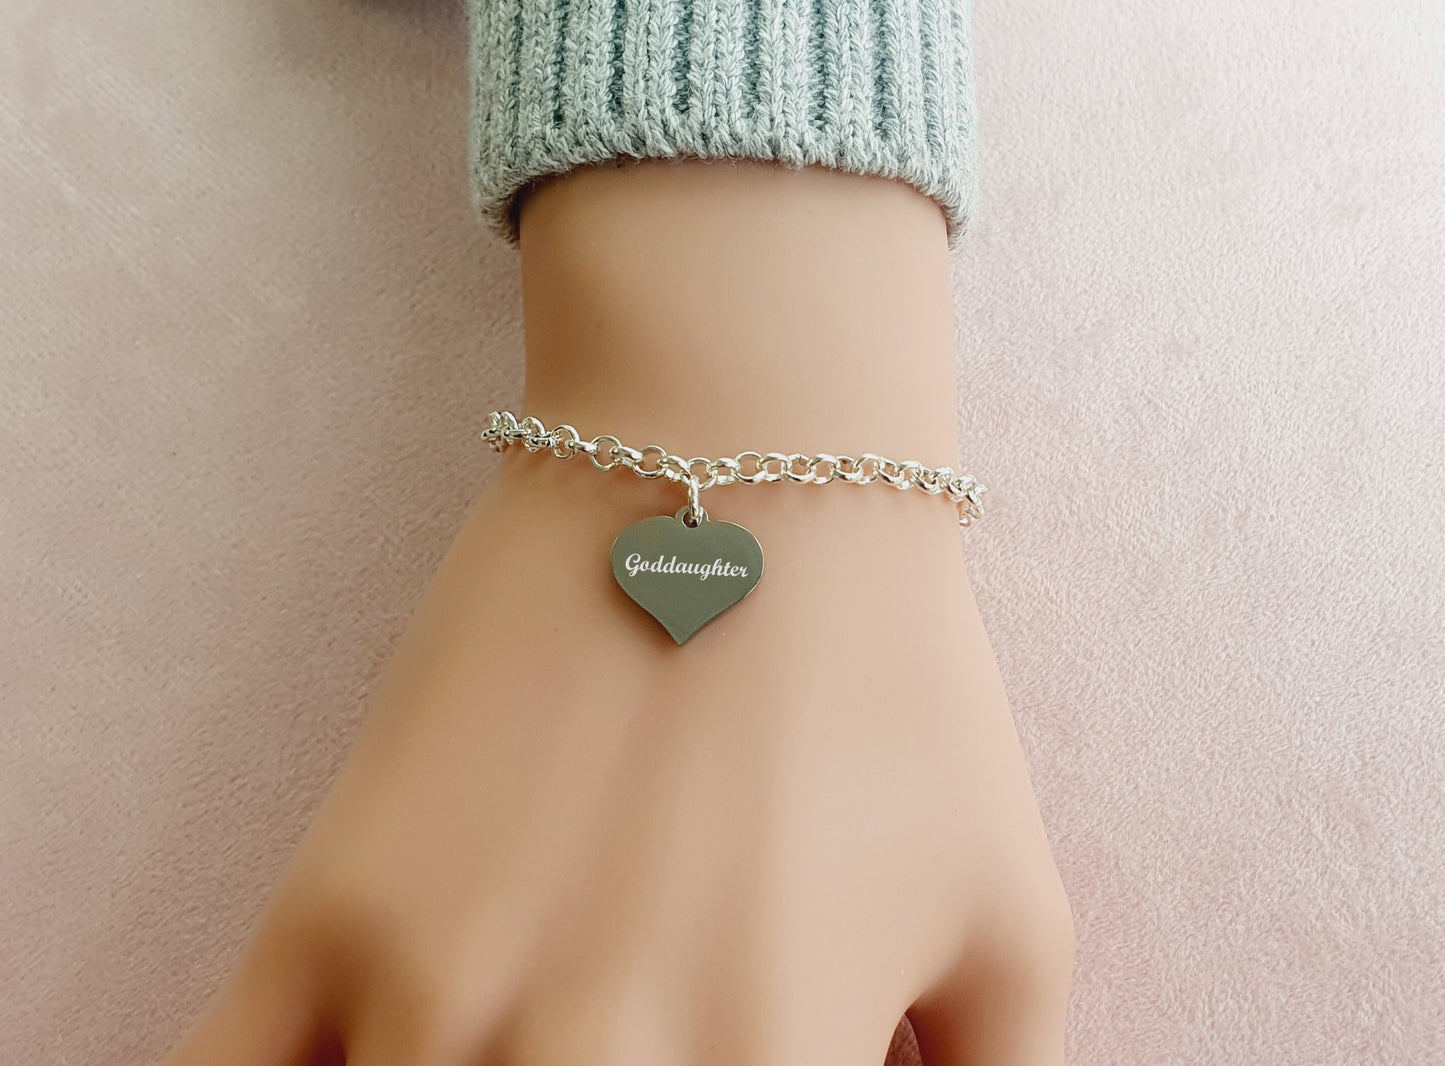 Goddaughter Engraved Heart Charm Link Bracelet, Gift for Girl's and Women